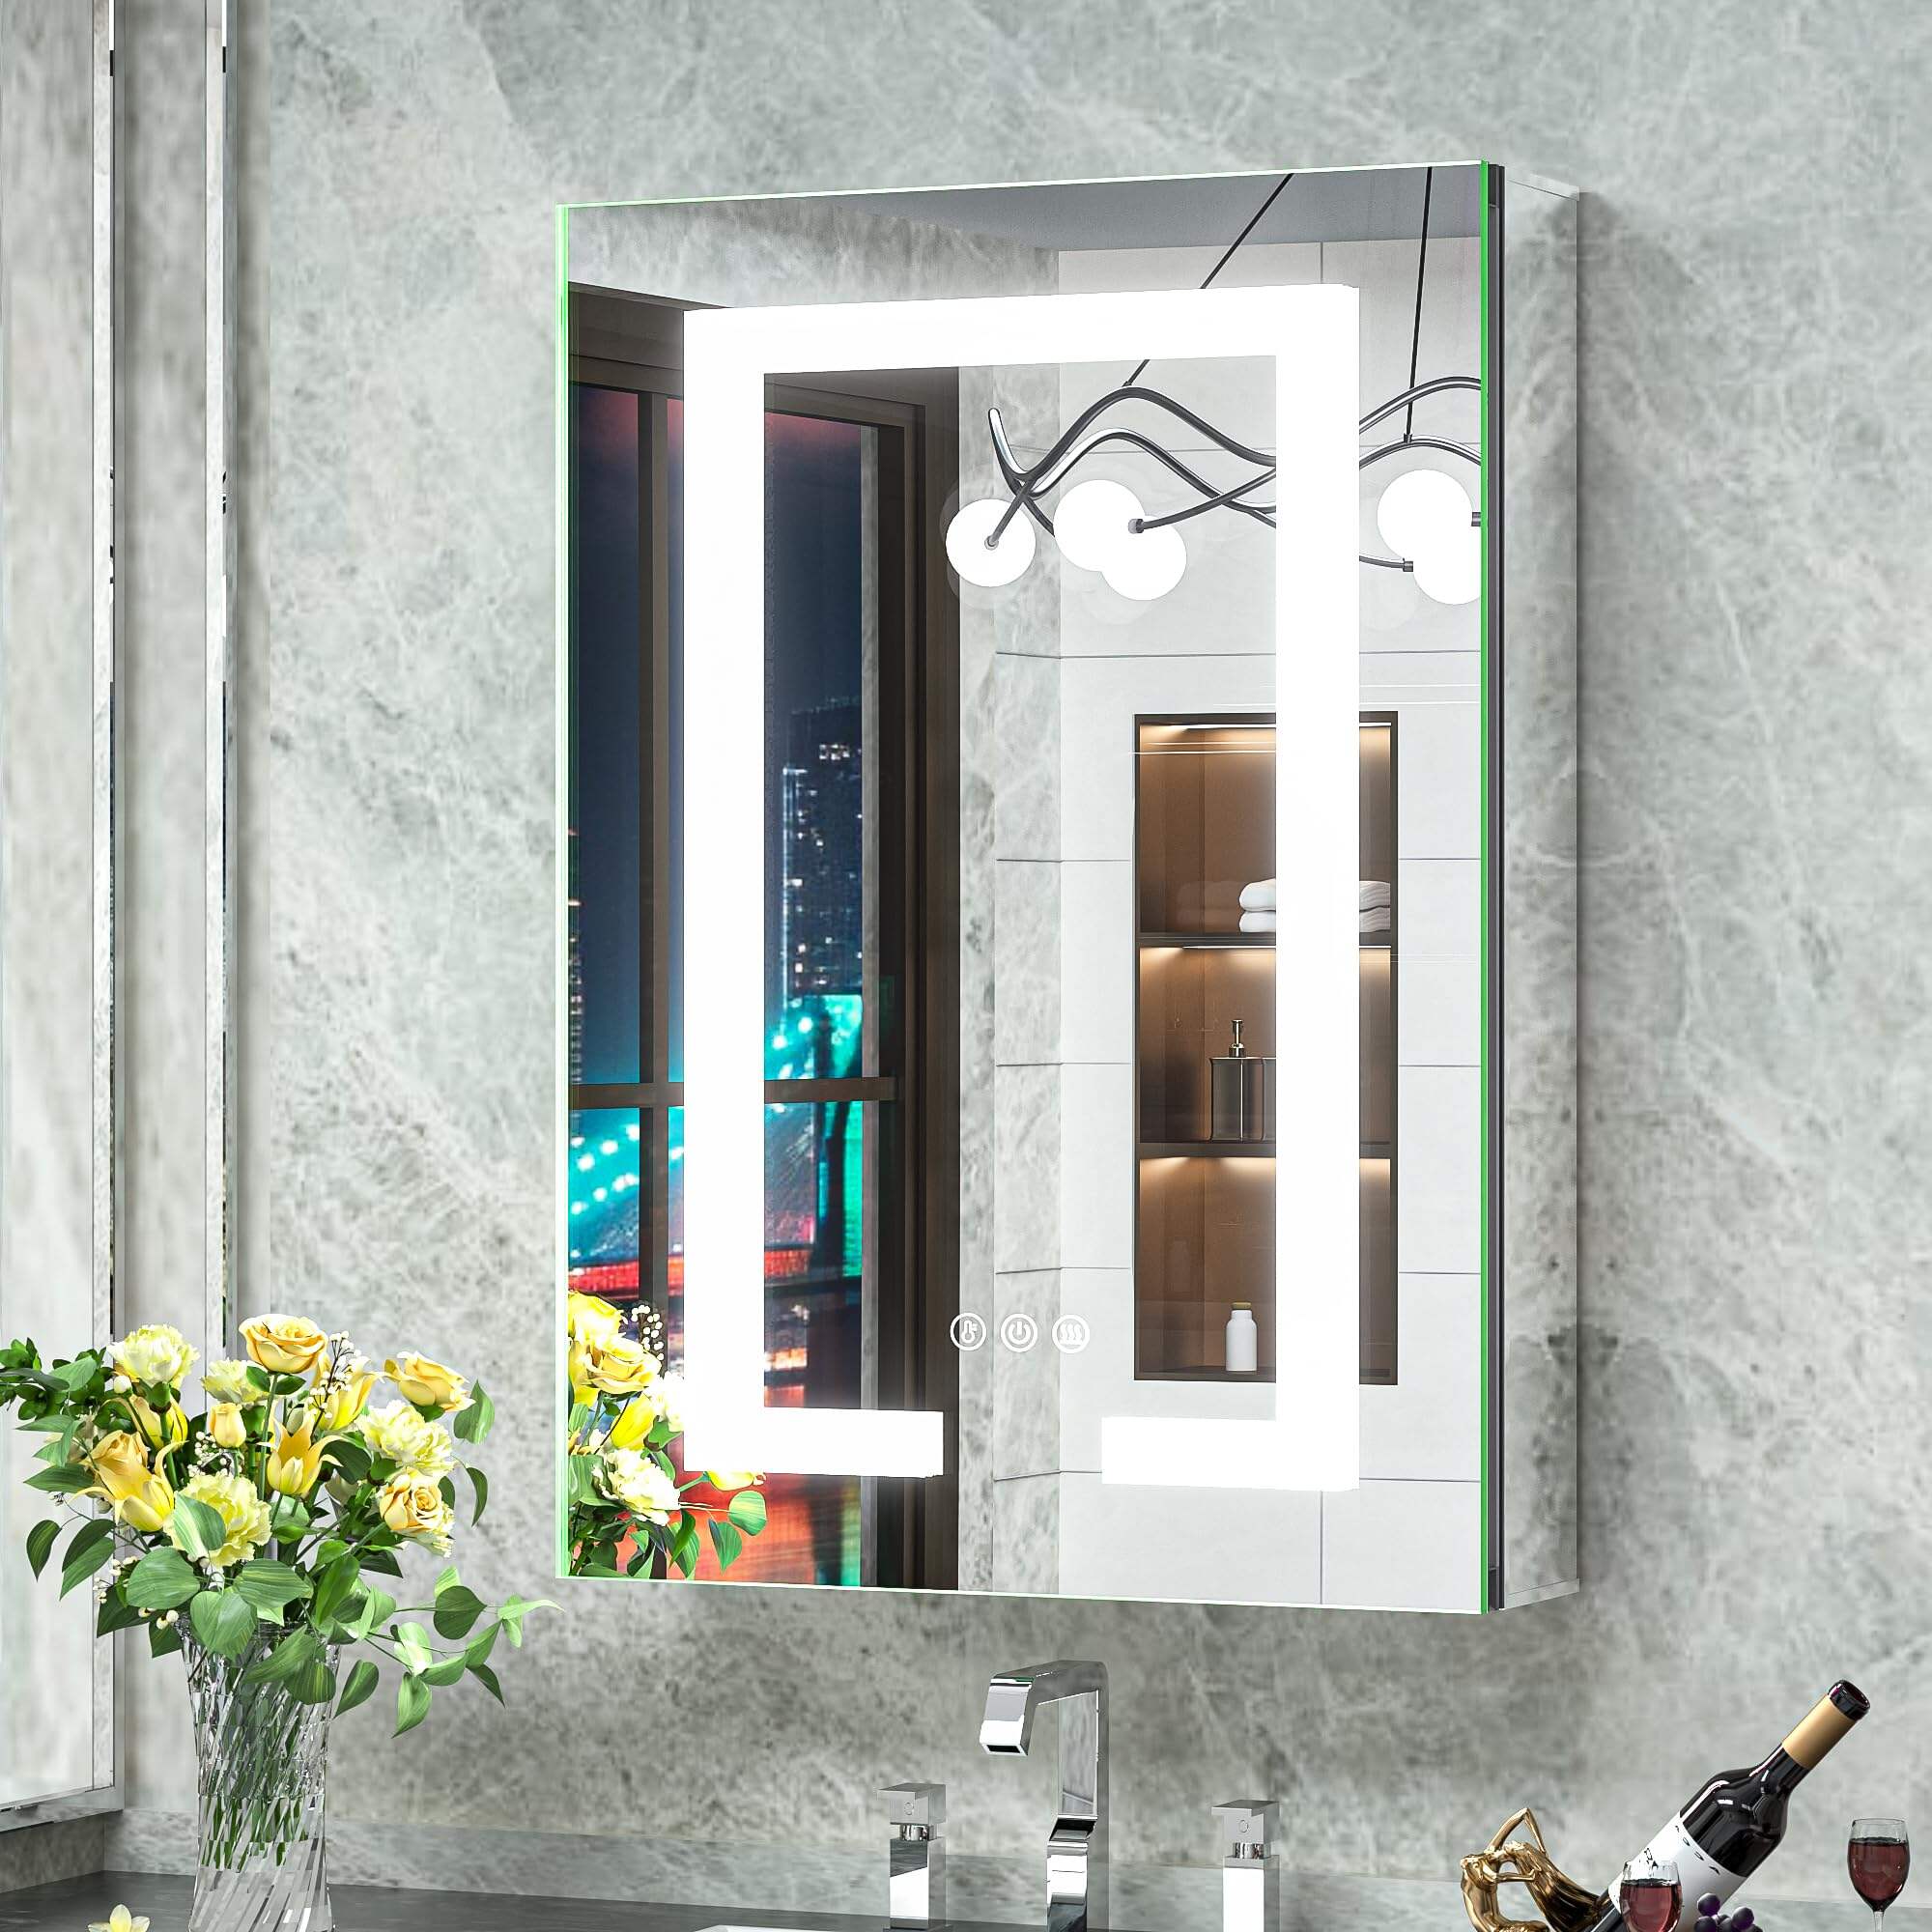 Foshan Haohan Smart Home Co., Ltd. 16x24 LED угаалгын өрөөний эмийн шүүгээний толь, цахилгаан залгууртай, урд талын гэрэлтүүлэгтэй, манангийн эсрэг 3 өнгийн температурыг багасгадаг гадаргуутай эсвэл угаалгын өрөөнд хадгалах болон орчин үеийн зориулалттай хонгилтой